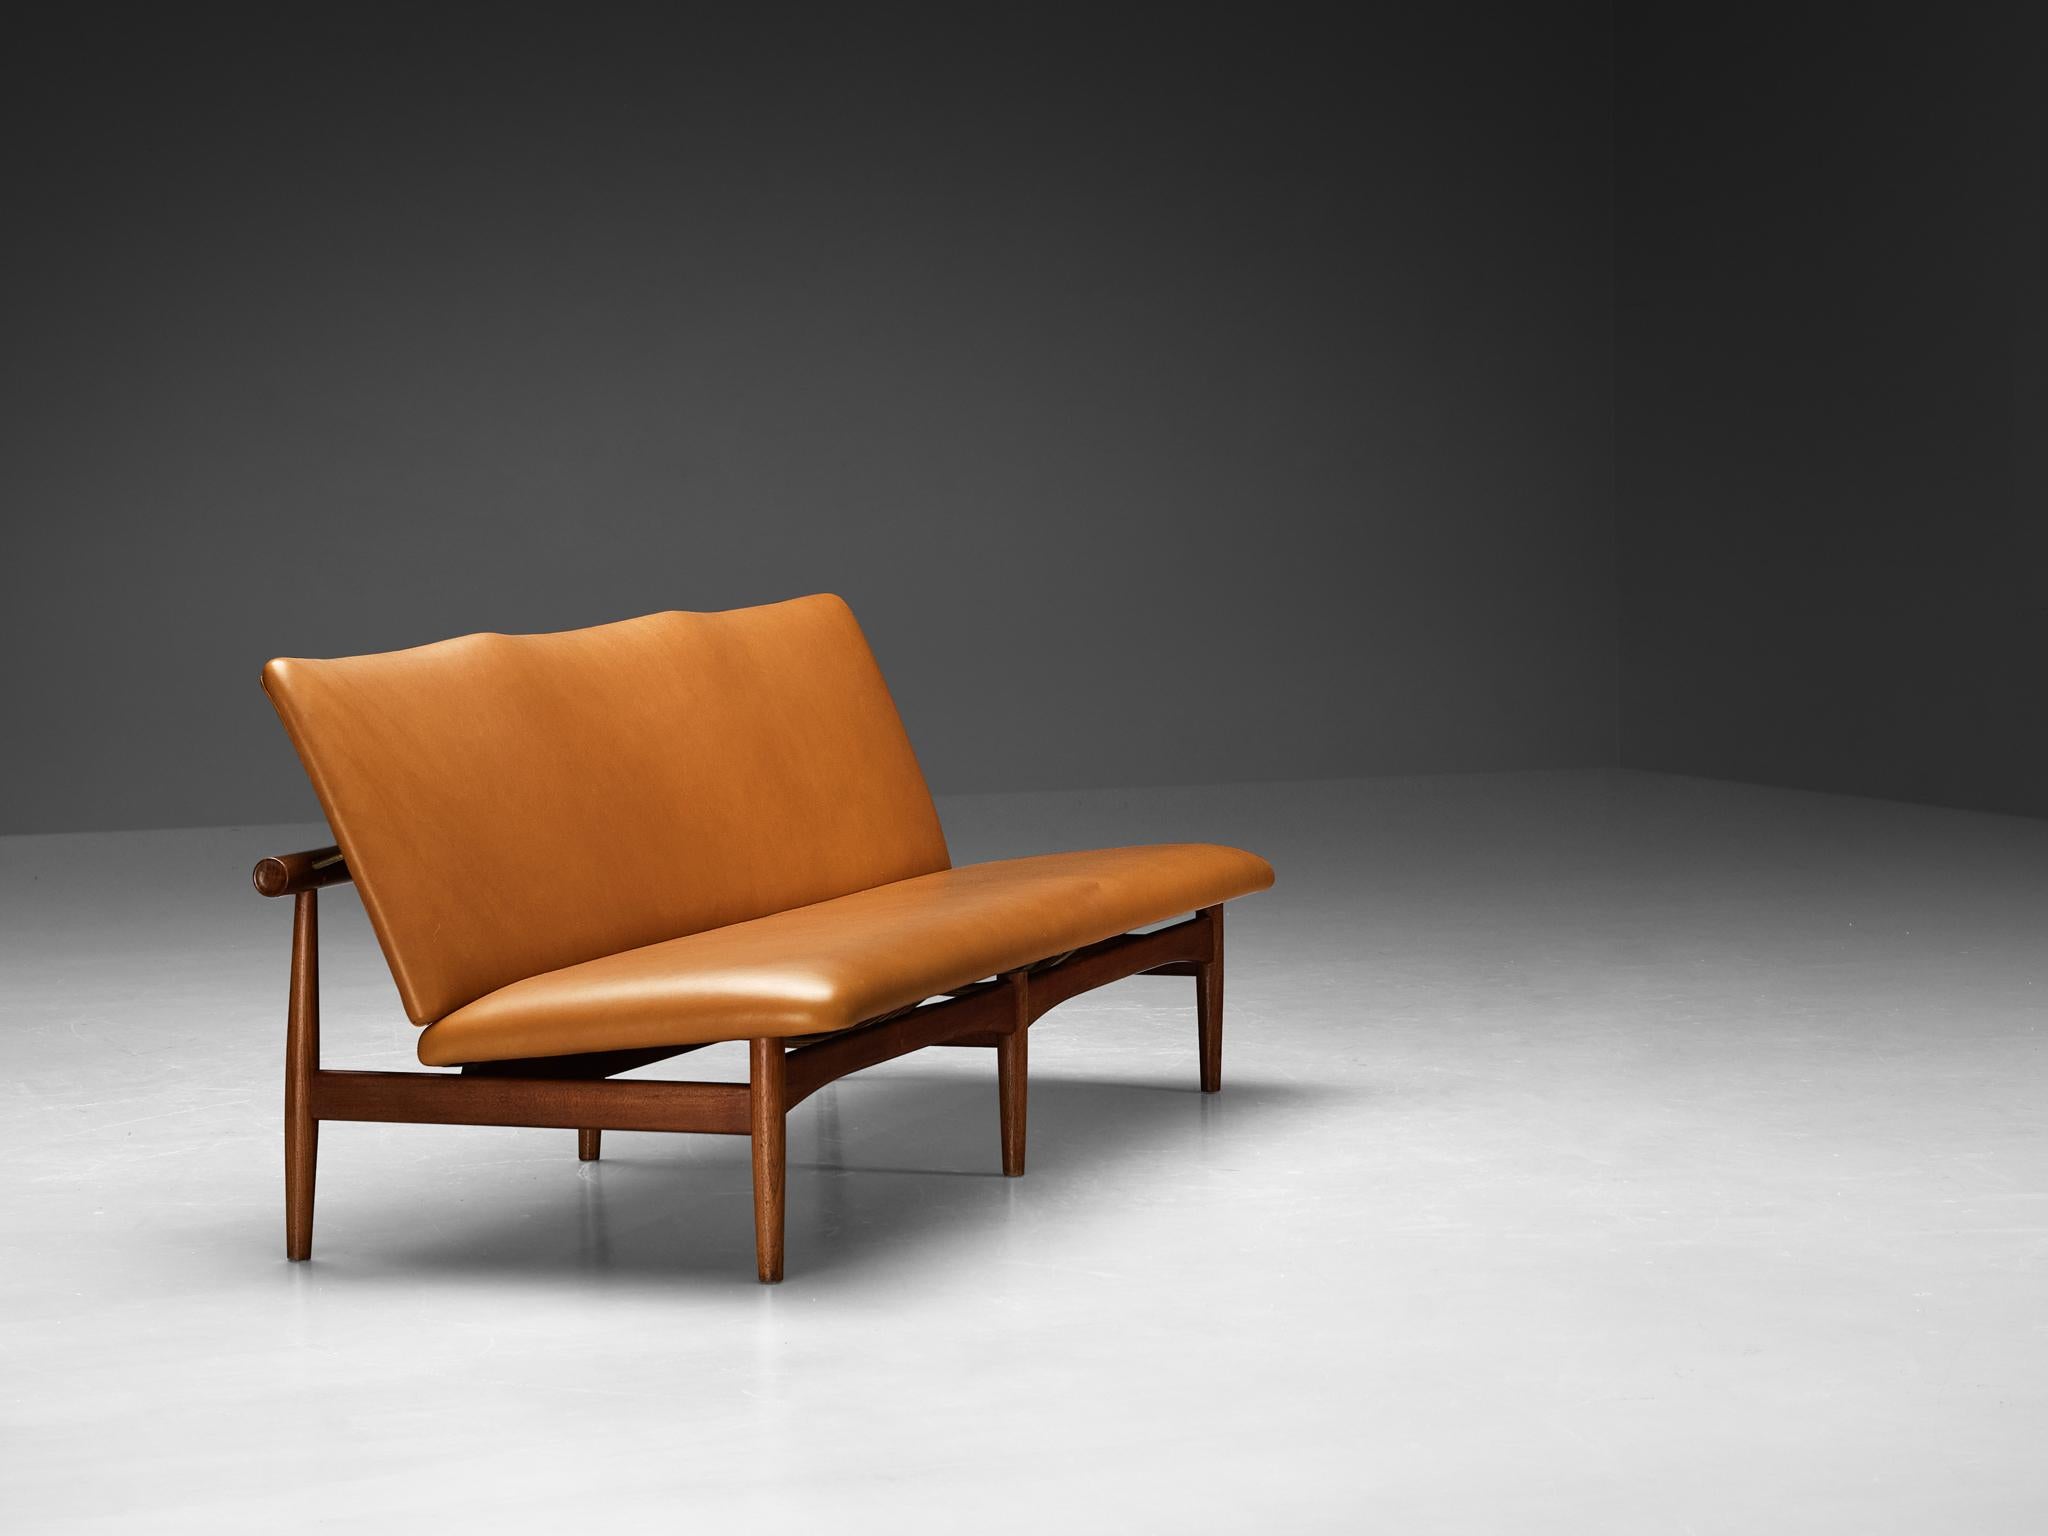 Finn Juhl for France & Søn, 'Japan' sofa, model ‘137/3’, teak, brass, reupholstered in leather 